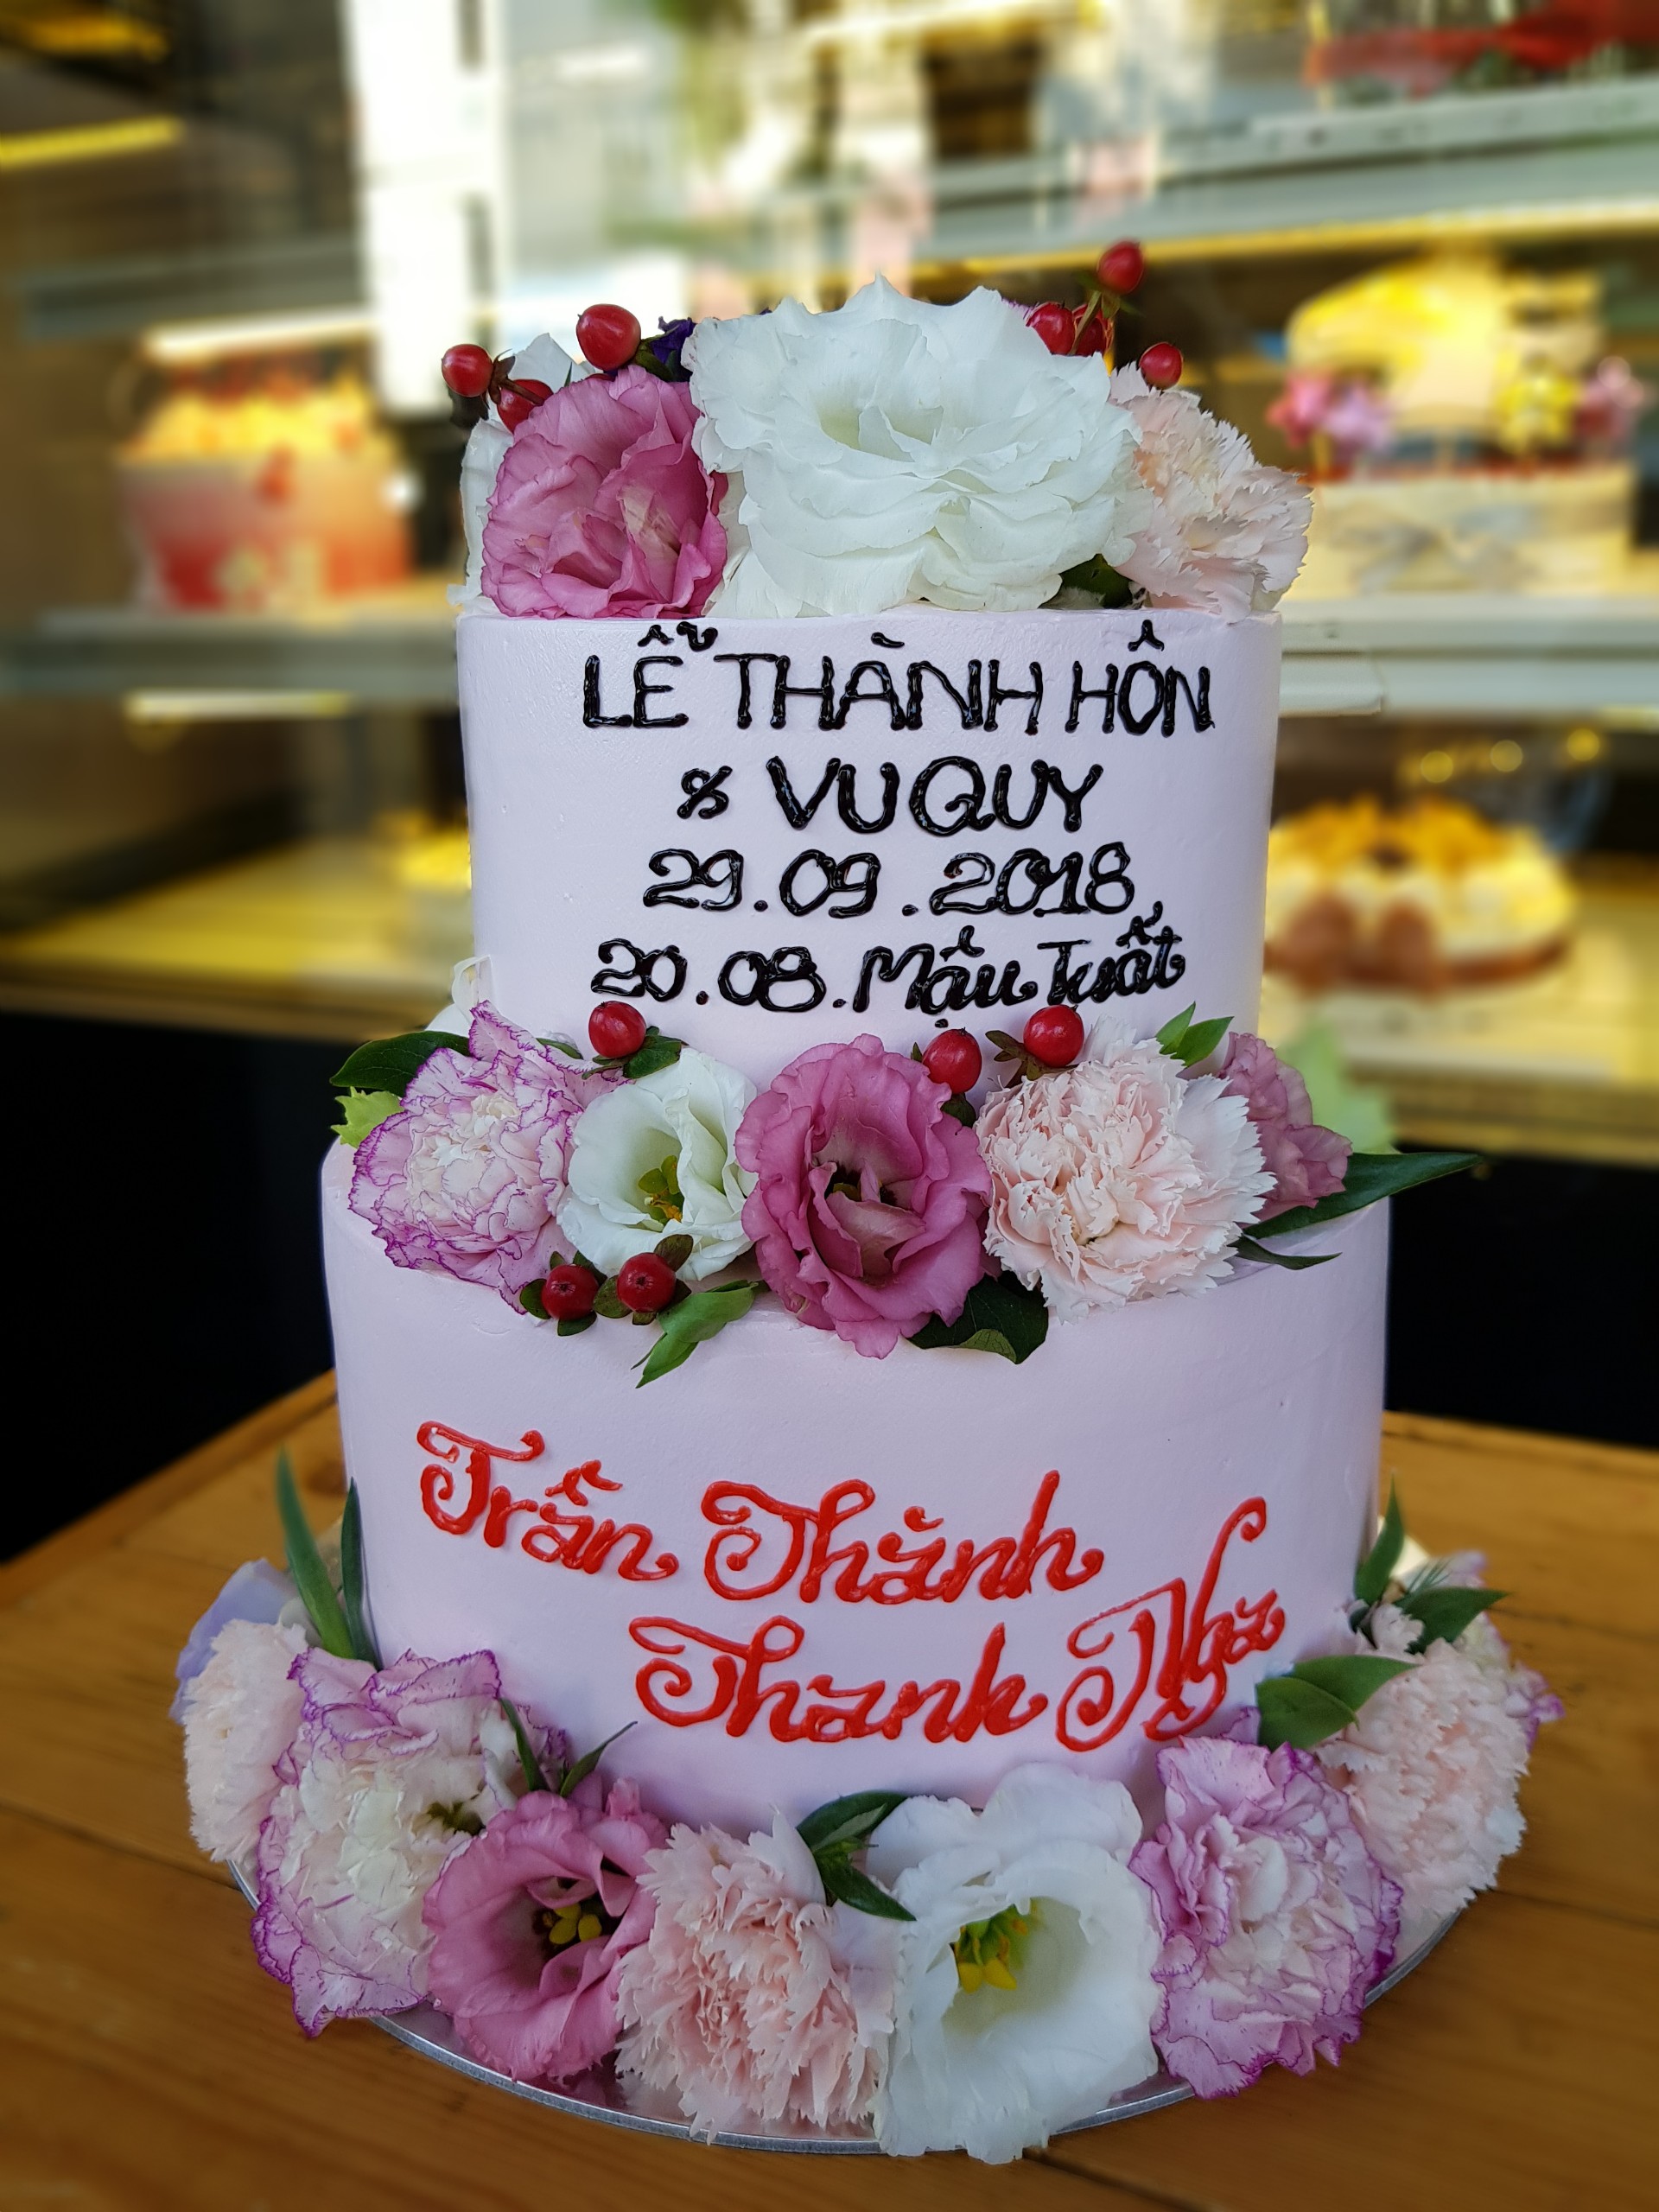 Bánh kem sinh nhật 2 tầng màu hồng hình đóa hoa trắng tao nhã  Bánh Thiên  Thần  Chuyên nhận đặt bánh sinh nhật theo mẫu